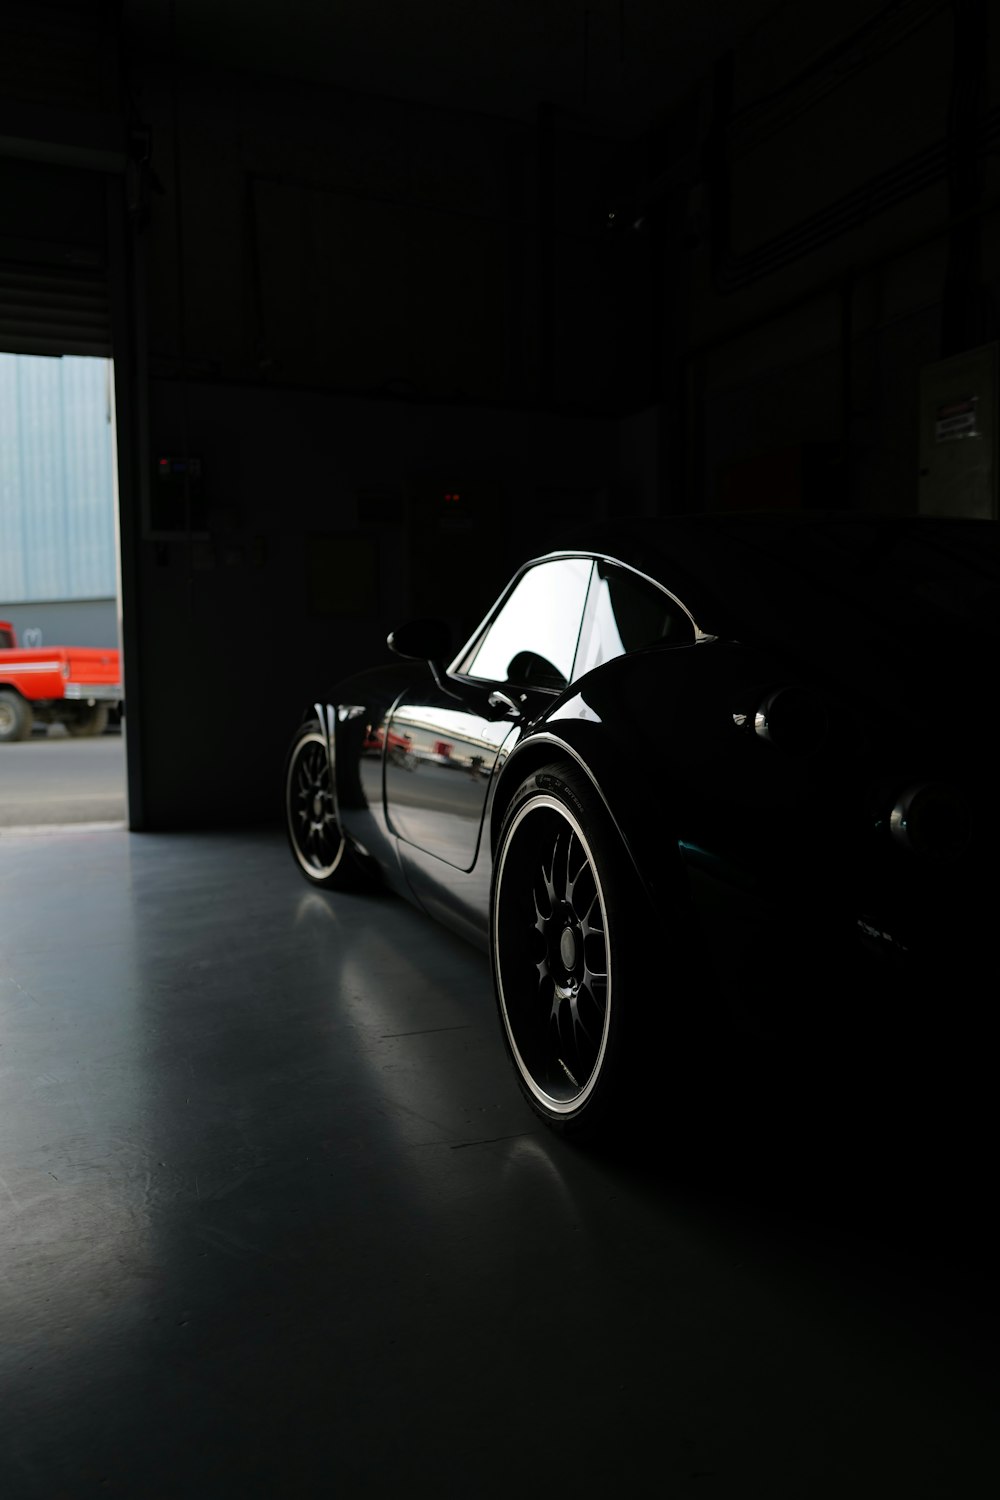 Porsche 911 negro aparcado en el garaje